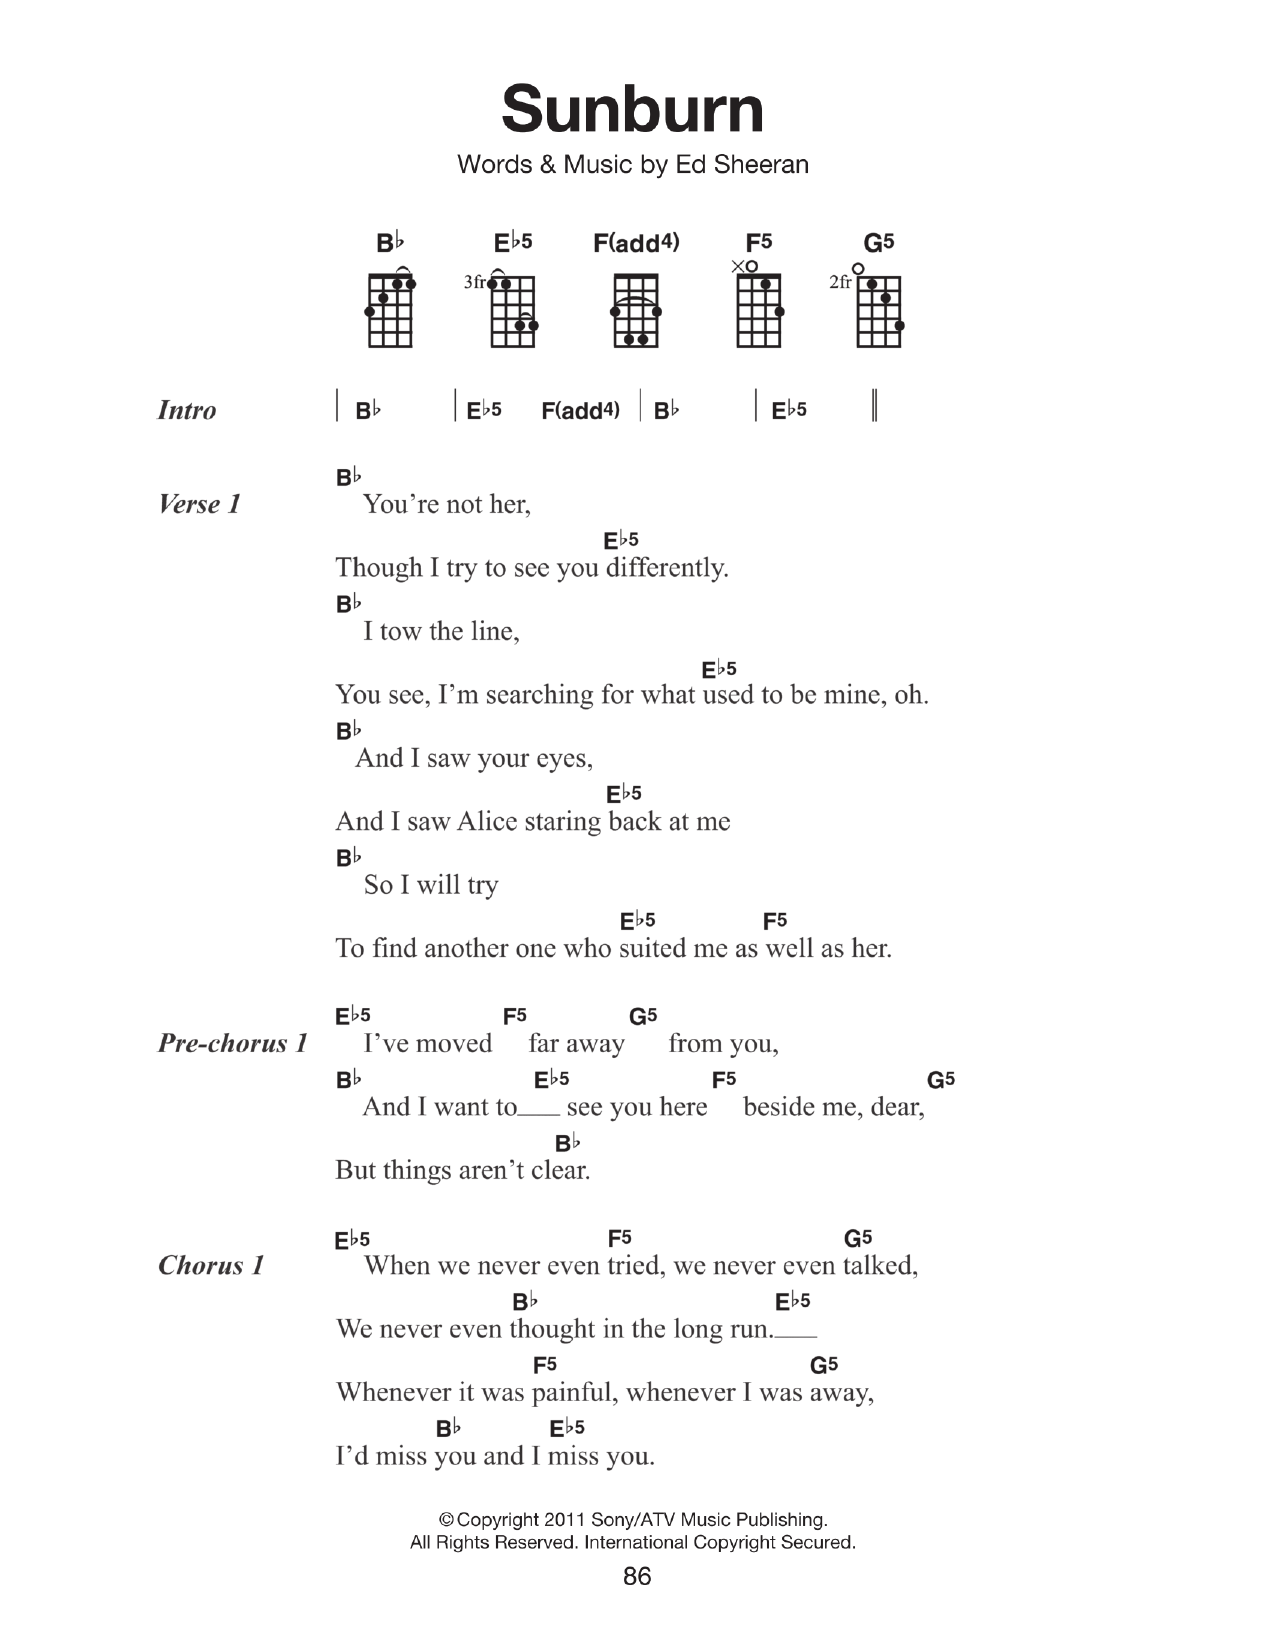 Ed Sheeran Sunburn Sheet Music Notes & Chords for Lyrics & Chords - Download or Print PDF